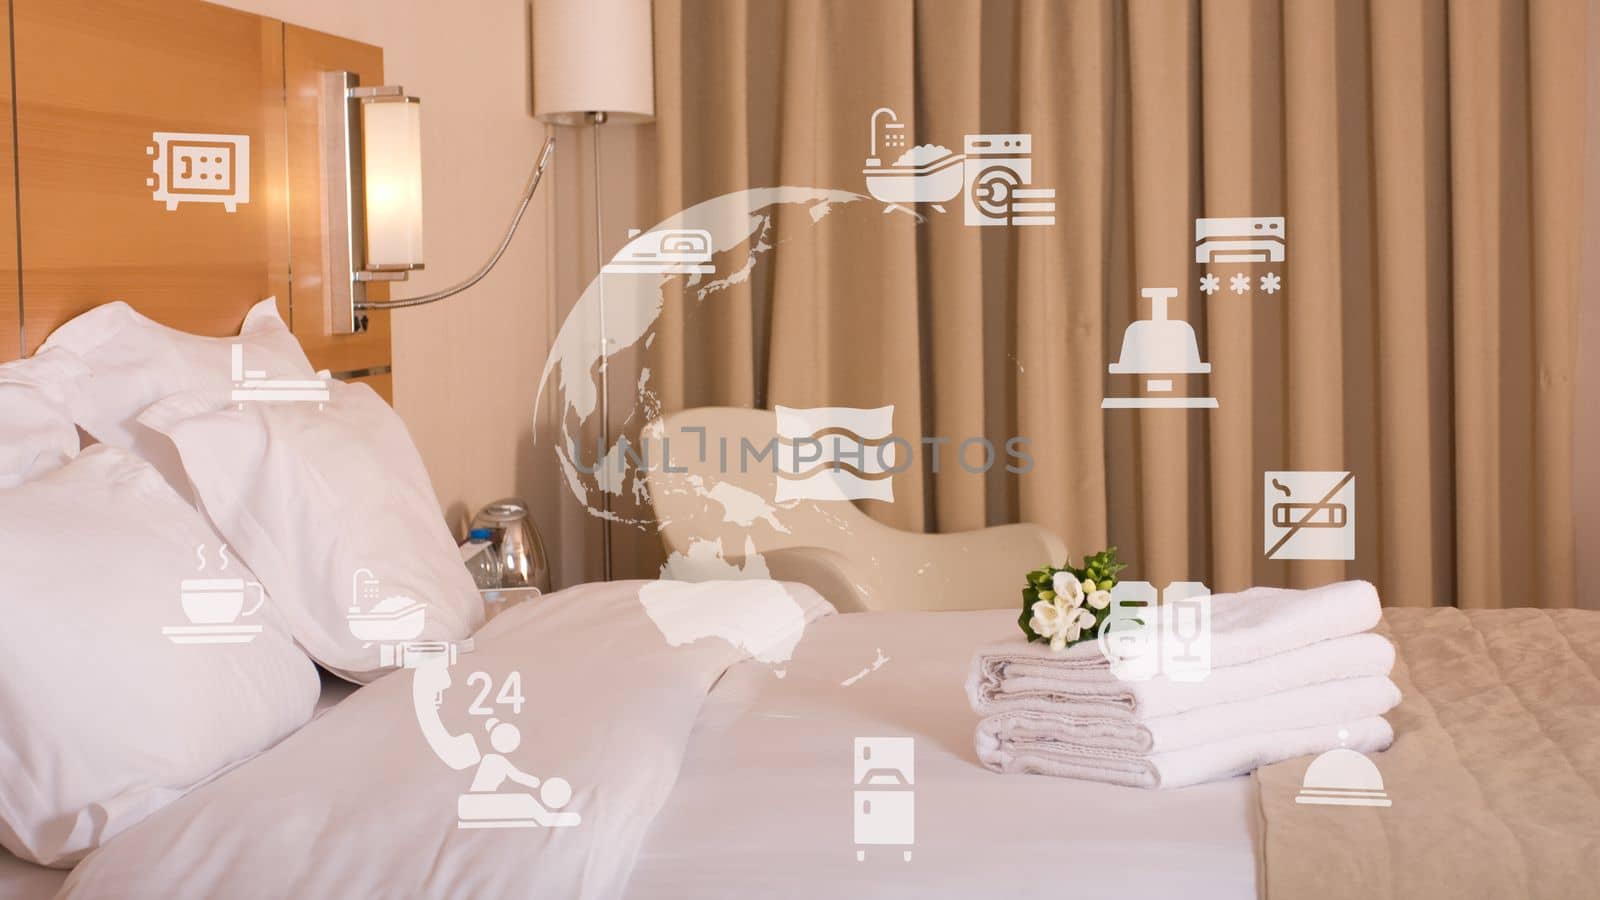 King sized bed in a luxury hotel room by senkaya